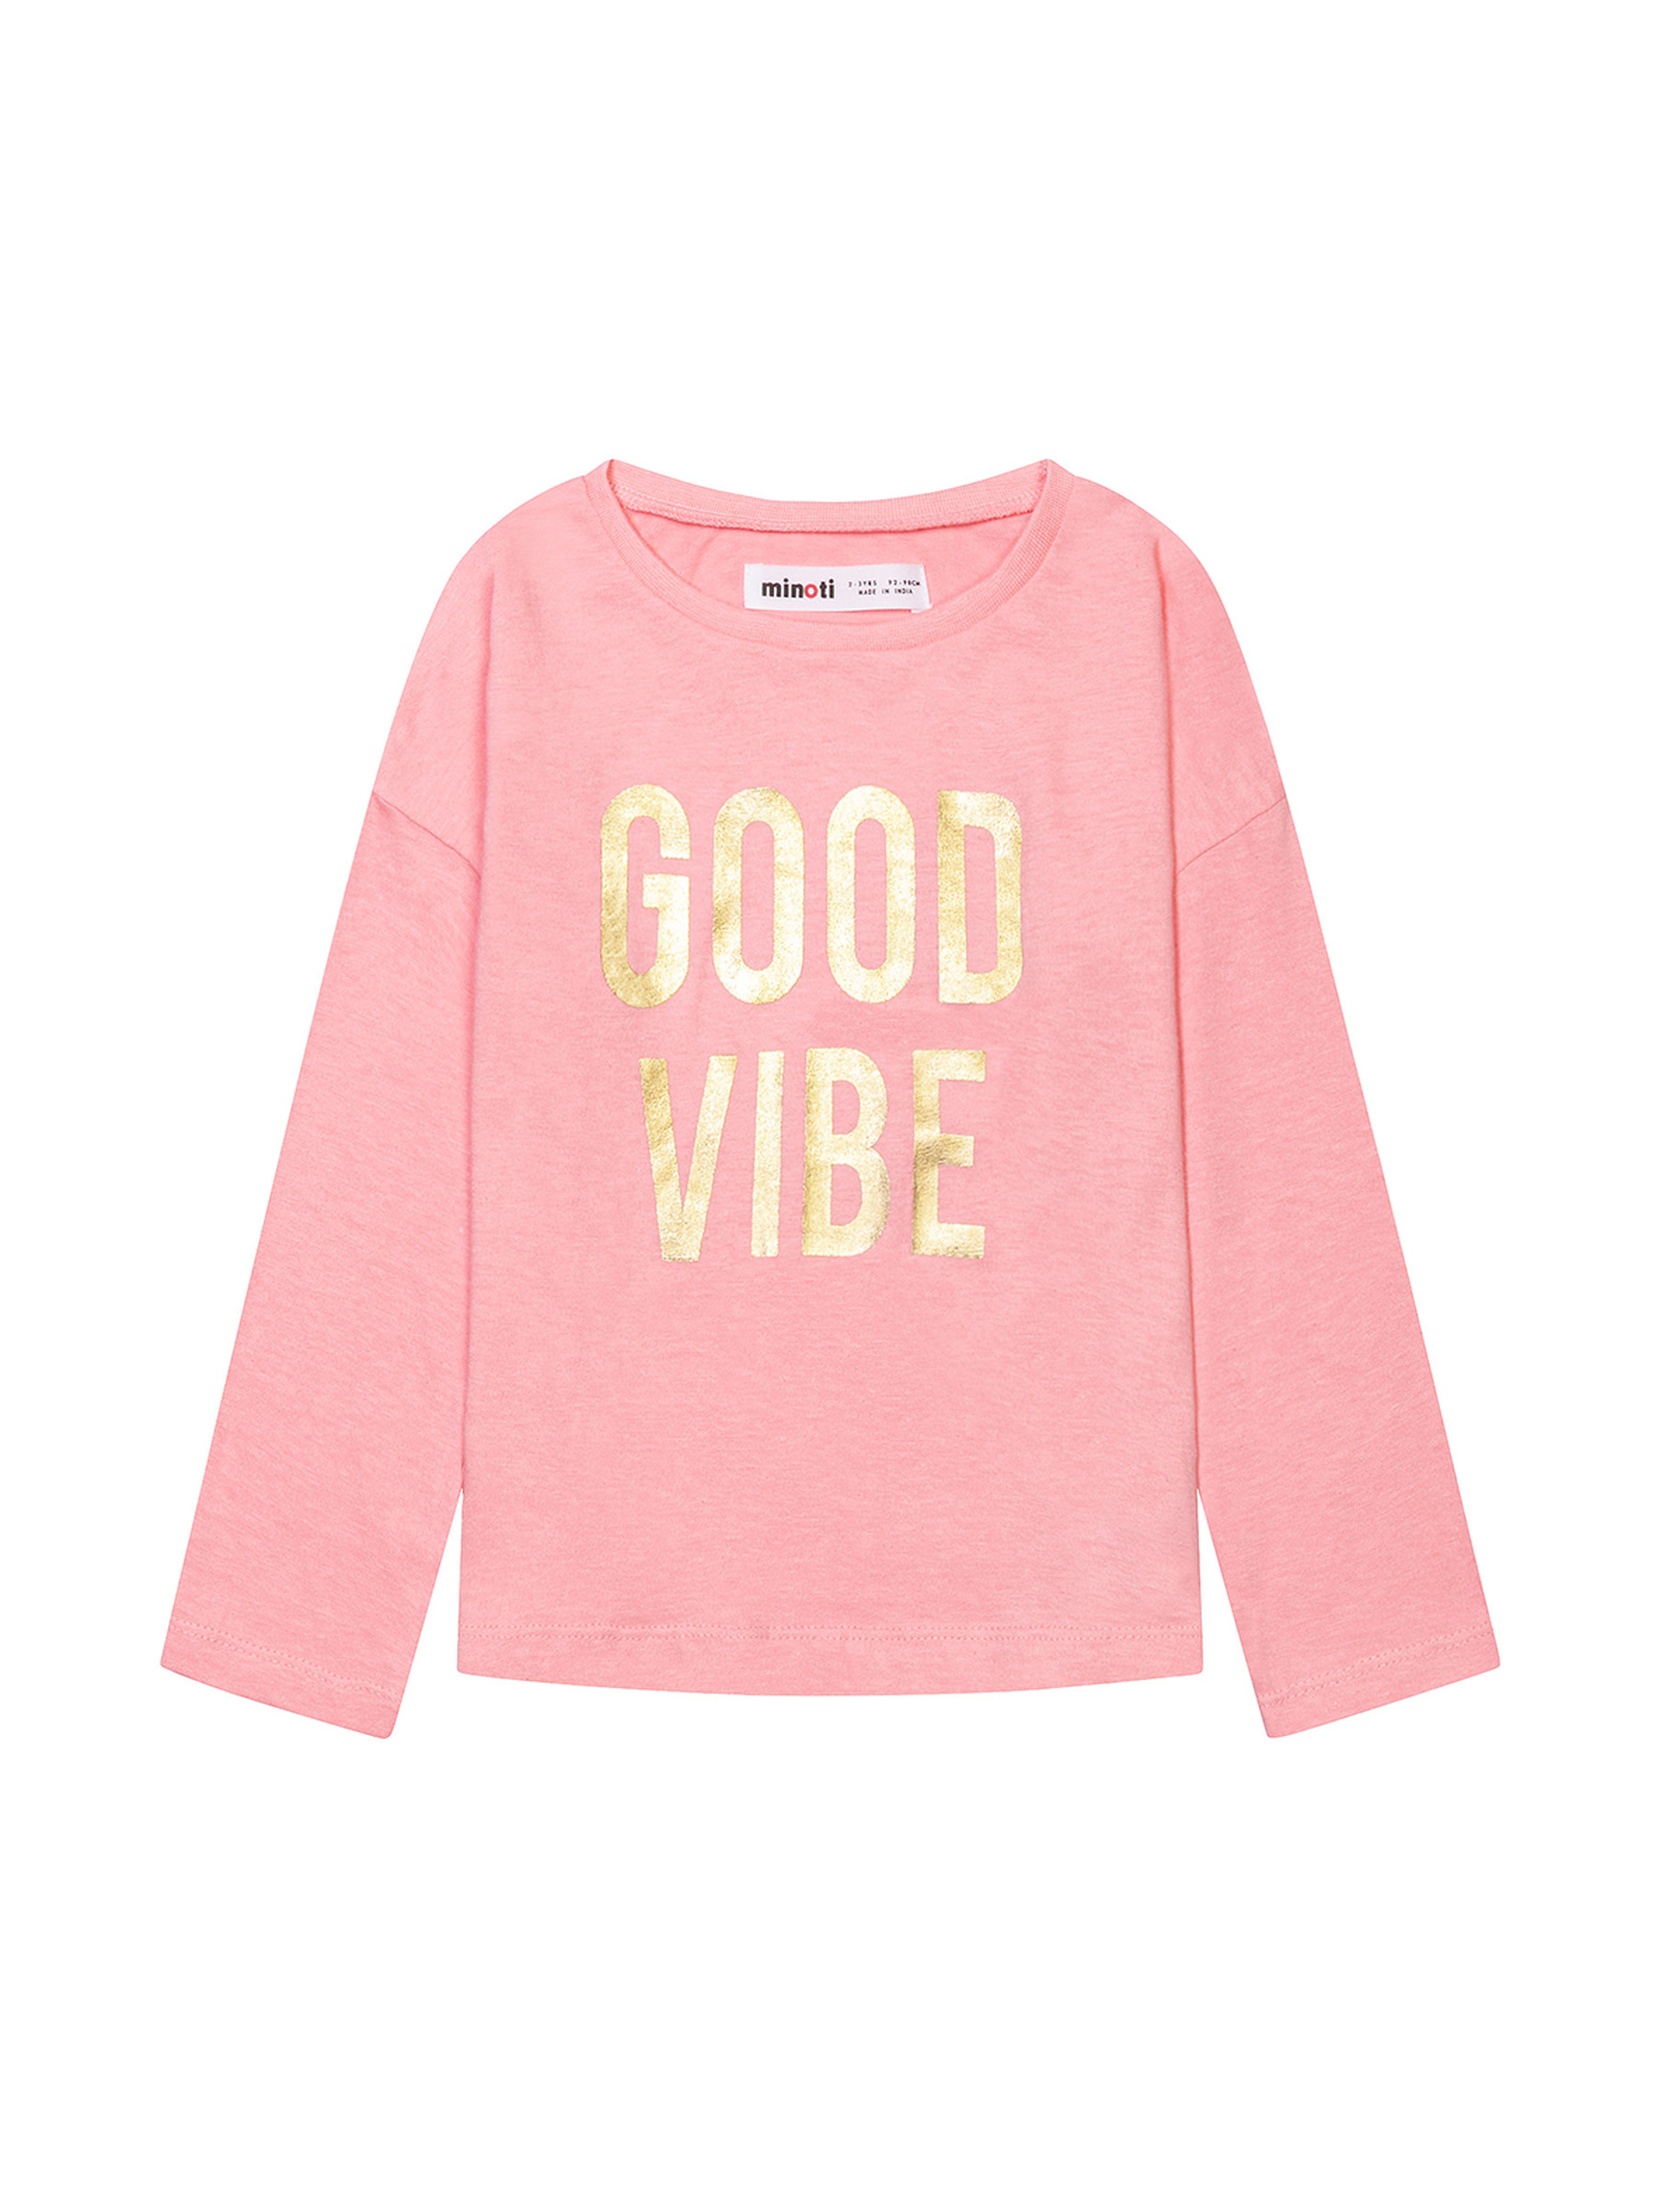 Bluzka niemowlęca bawełniana różowa- Good vibe